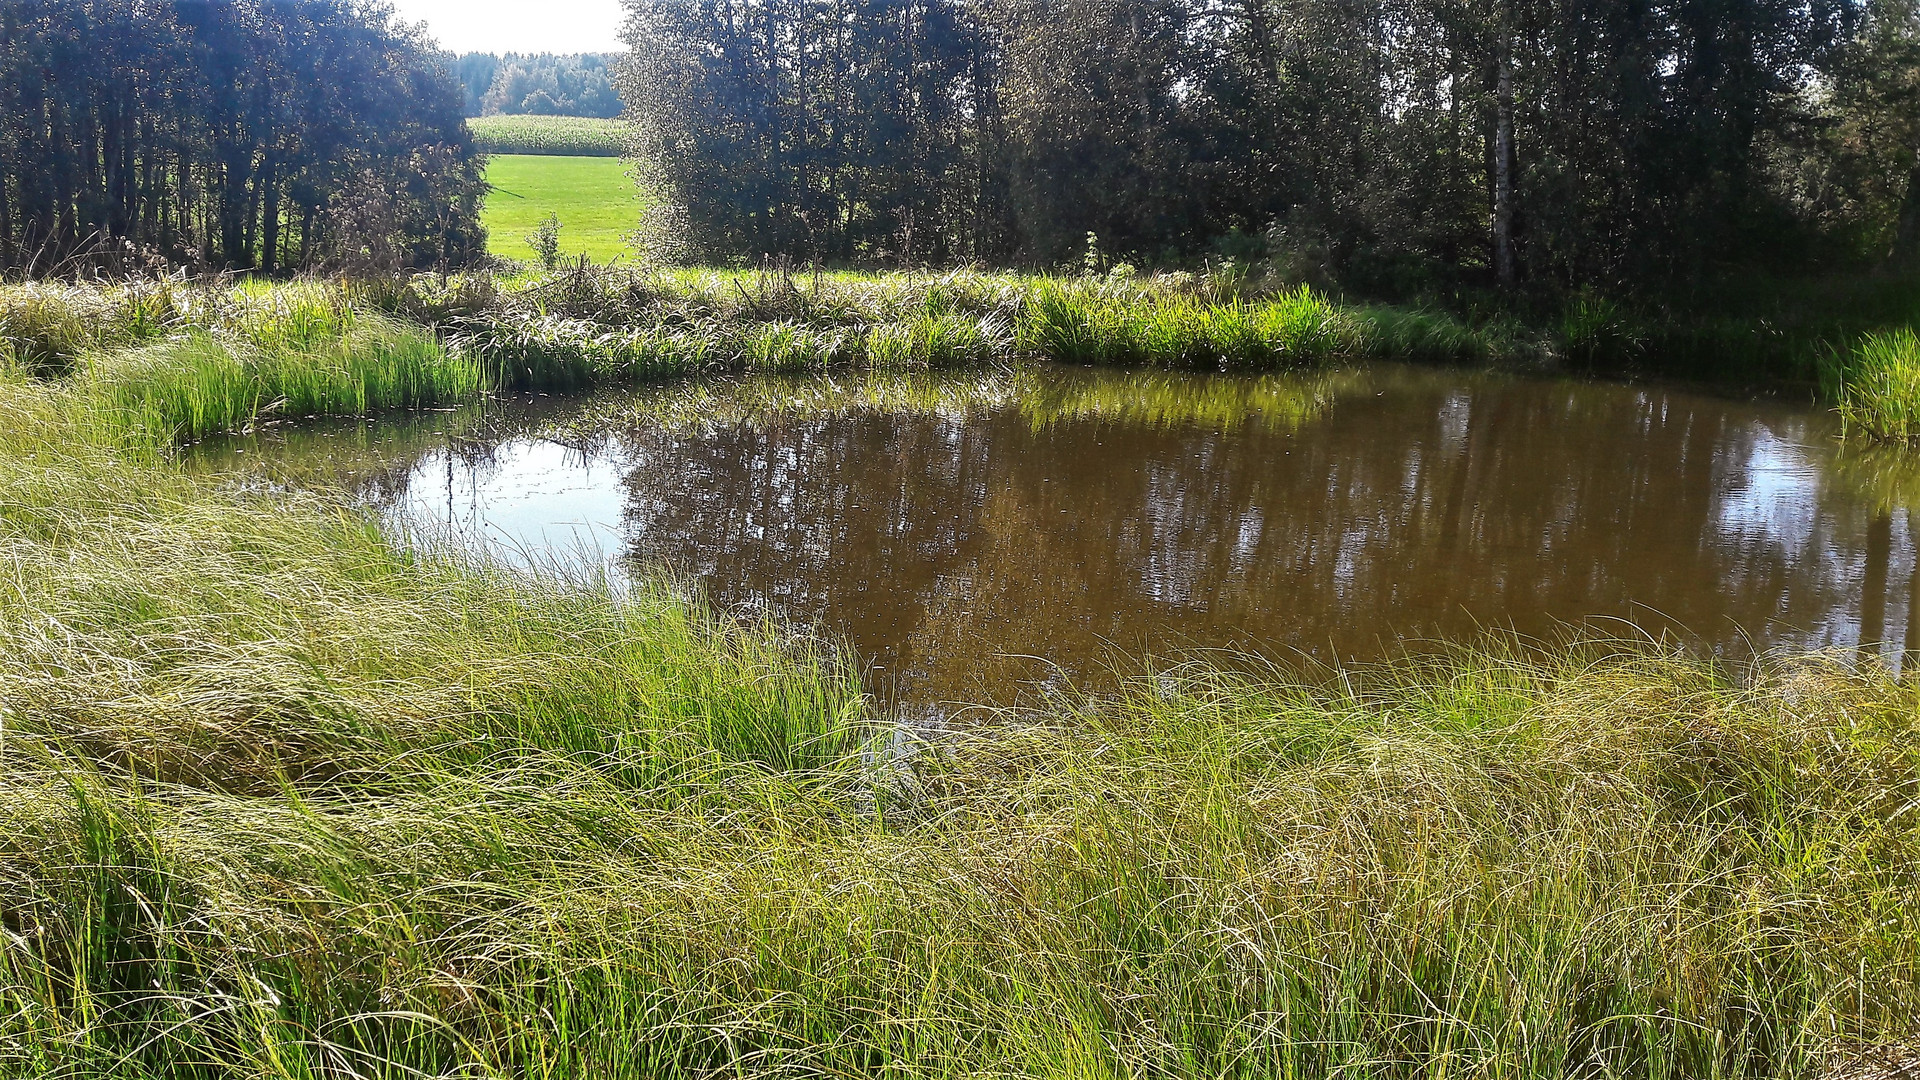 20200909 Der kleine Teich im hohem Gras